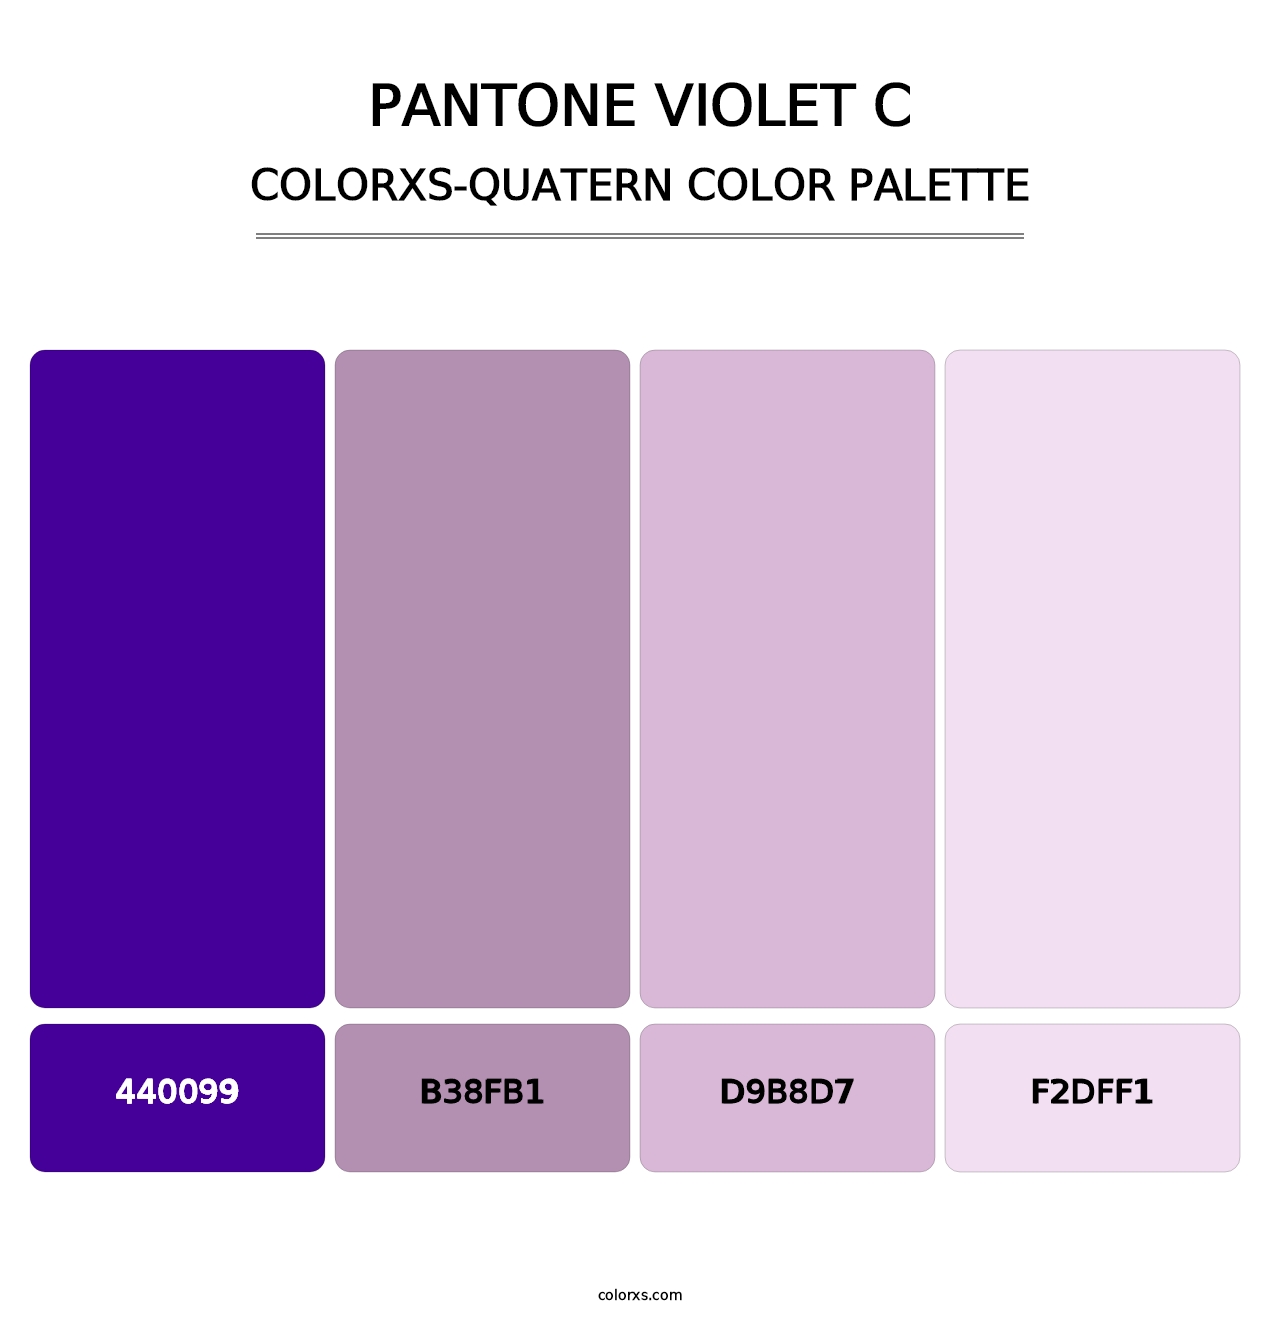 PANTONE Violet C - Colorxs Quatern Palette